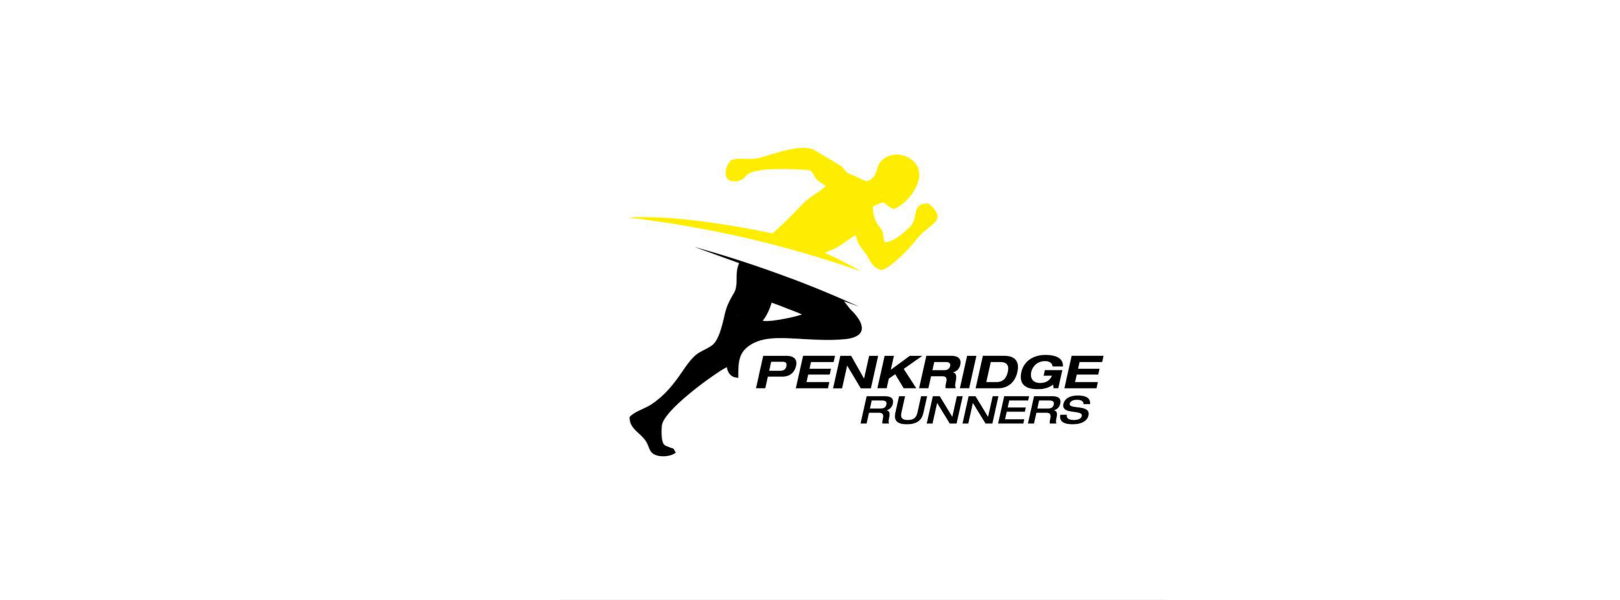 Penkridge 10k Run (15+) carousel image 2